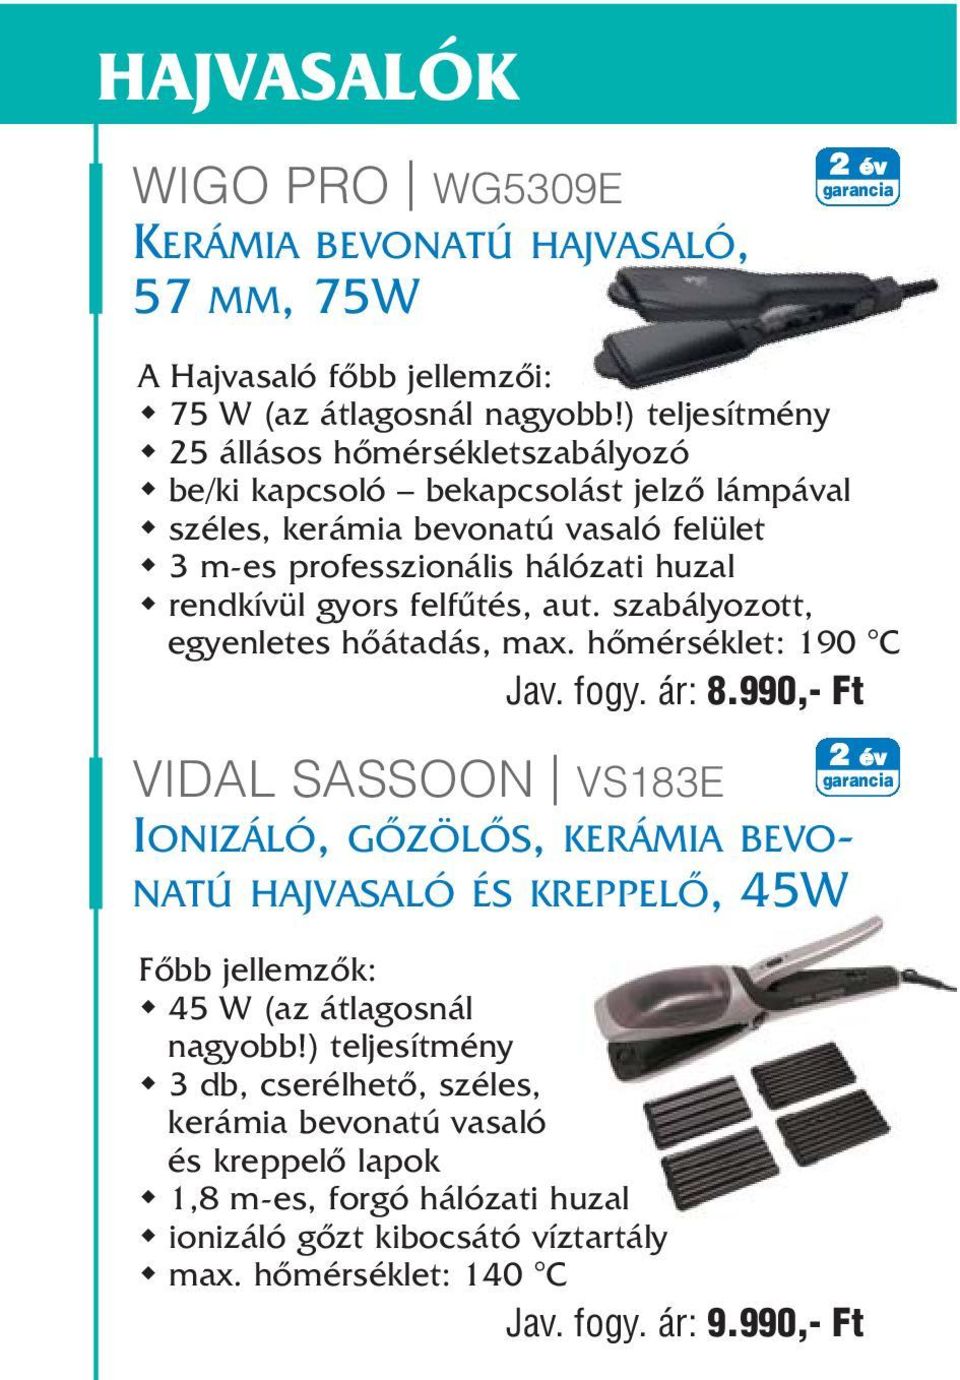 HAJSZÁRÍTÓK, FORMÁZÓK 2005 TAVASZ/NYÁR REVLON VOGUETI WIGO - PDF Free  Download